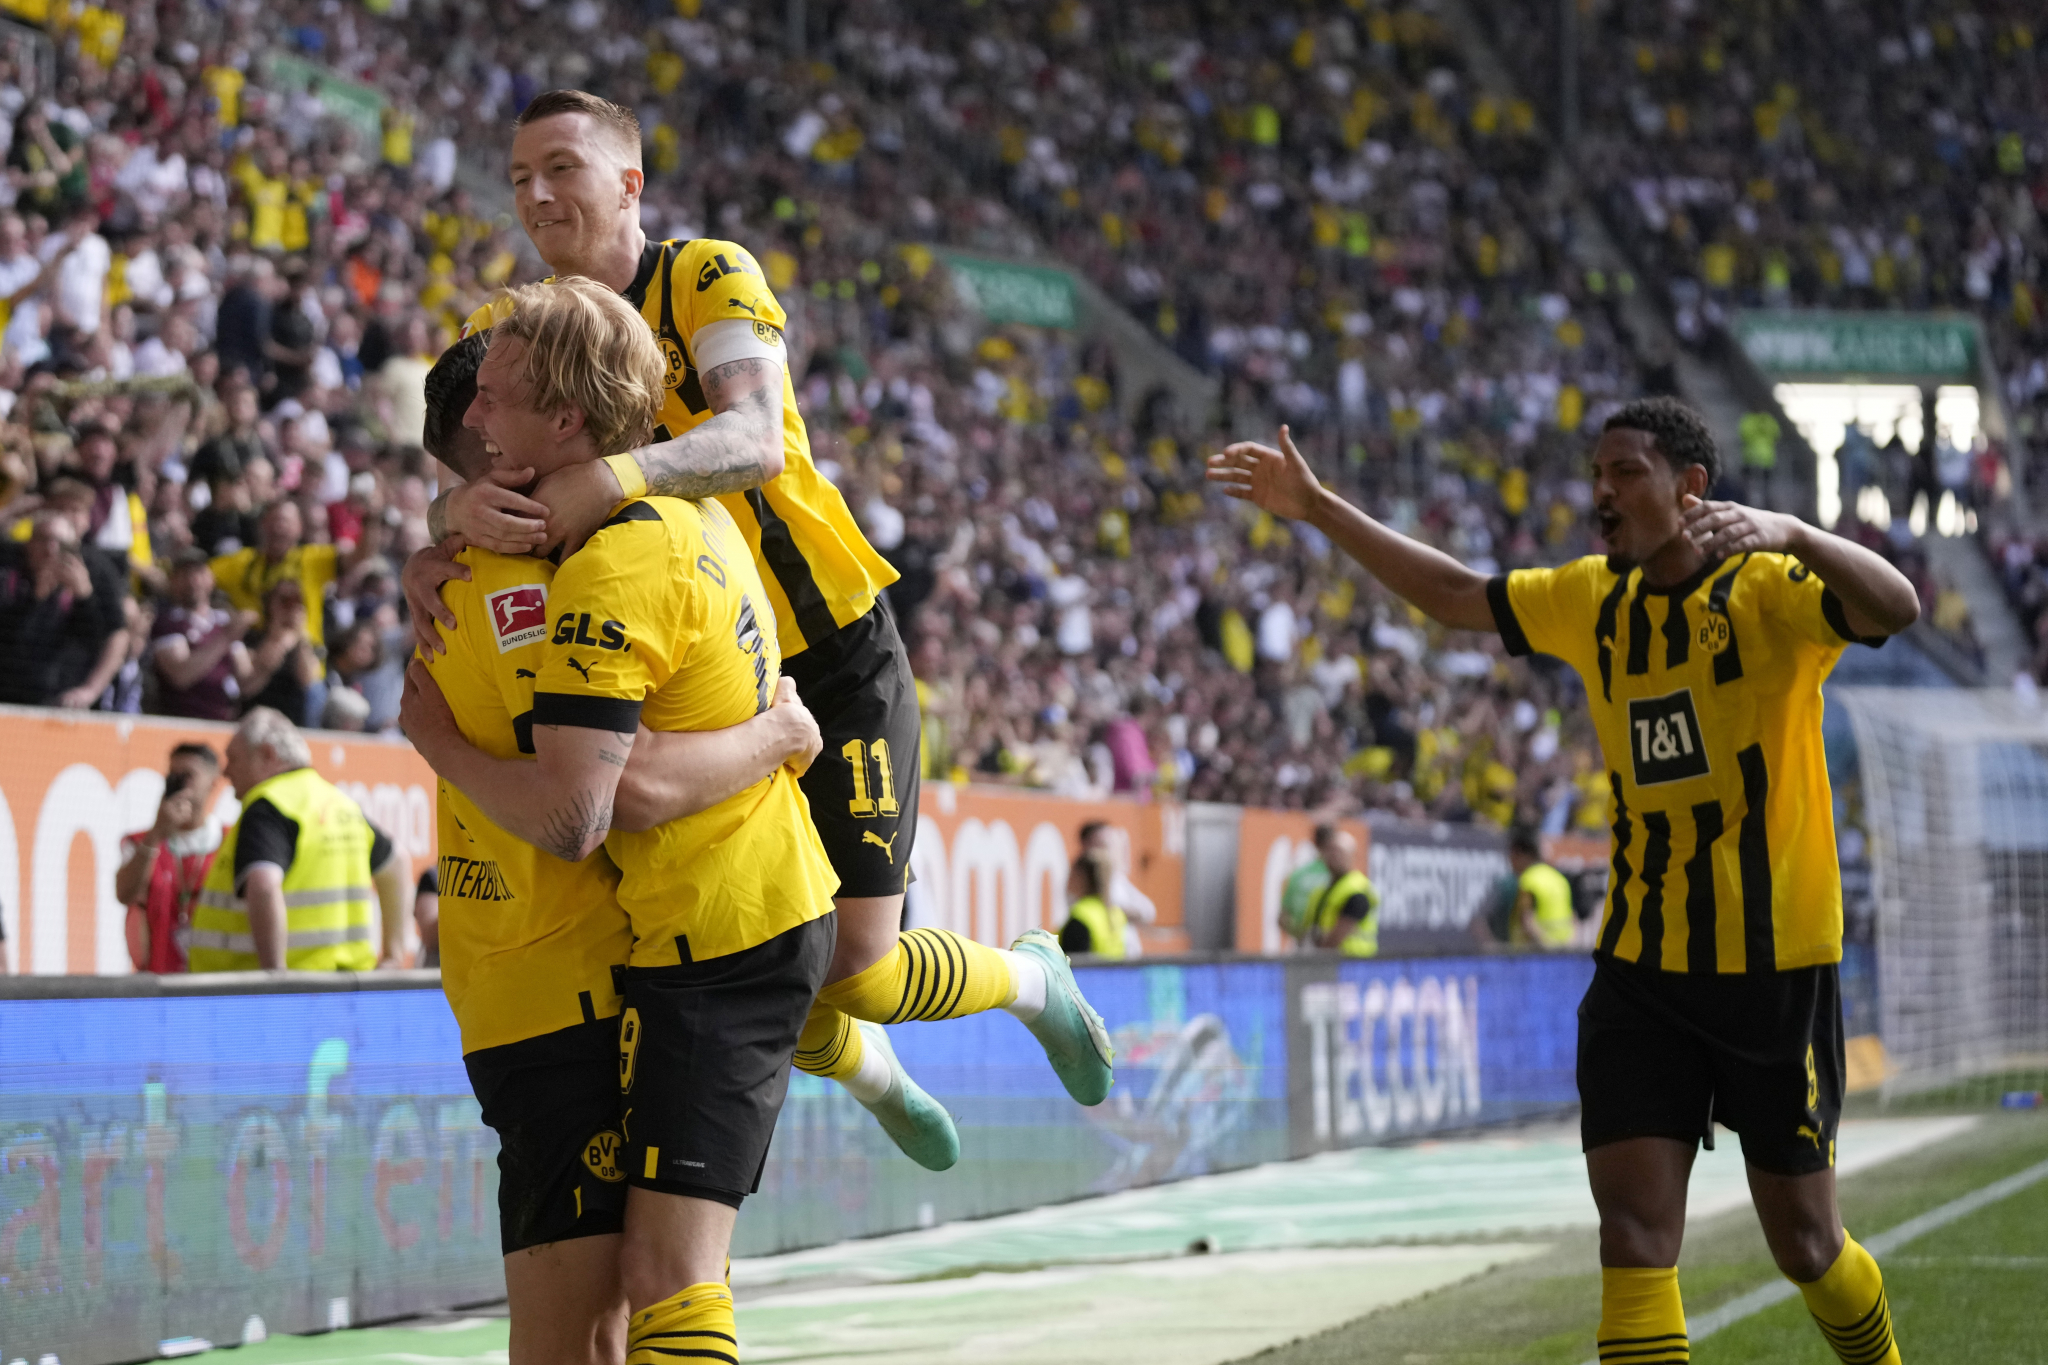 SPREMA SE SPEKTAKL Dortmund savladao Augzburg i preuzeo lidersku poziciju - sve će prštati u poslednjem kolu